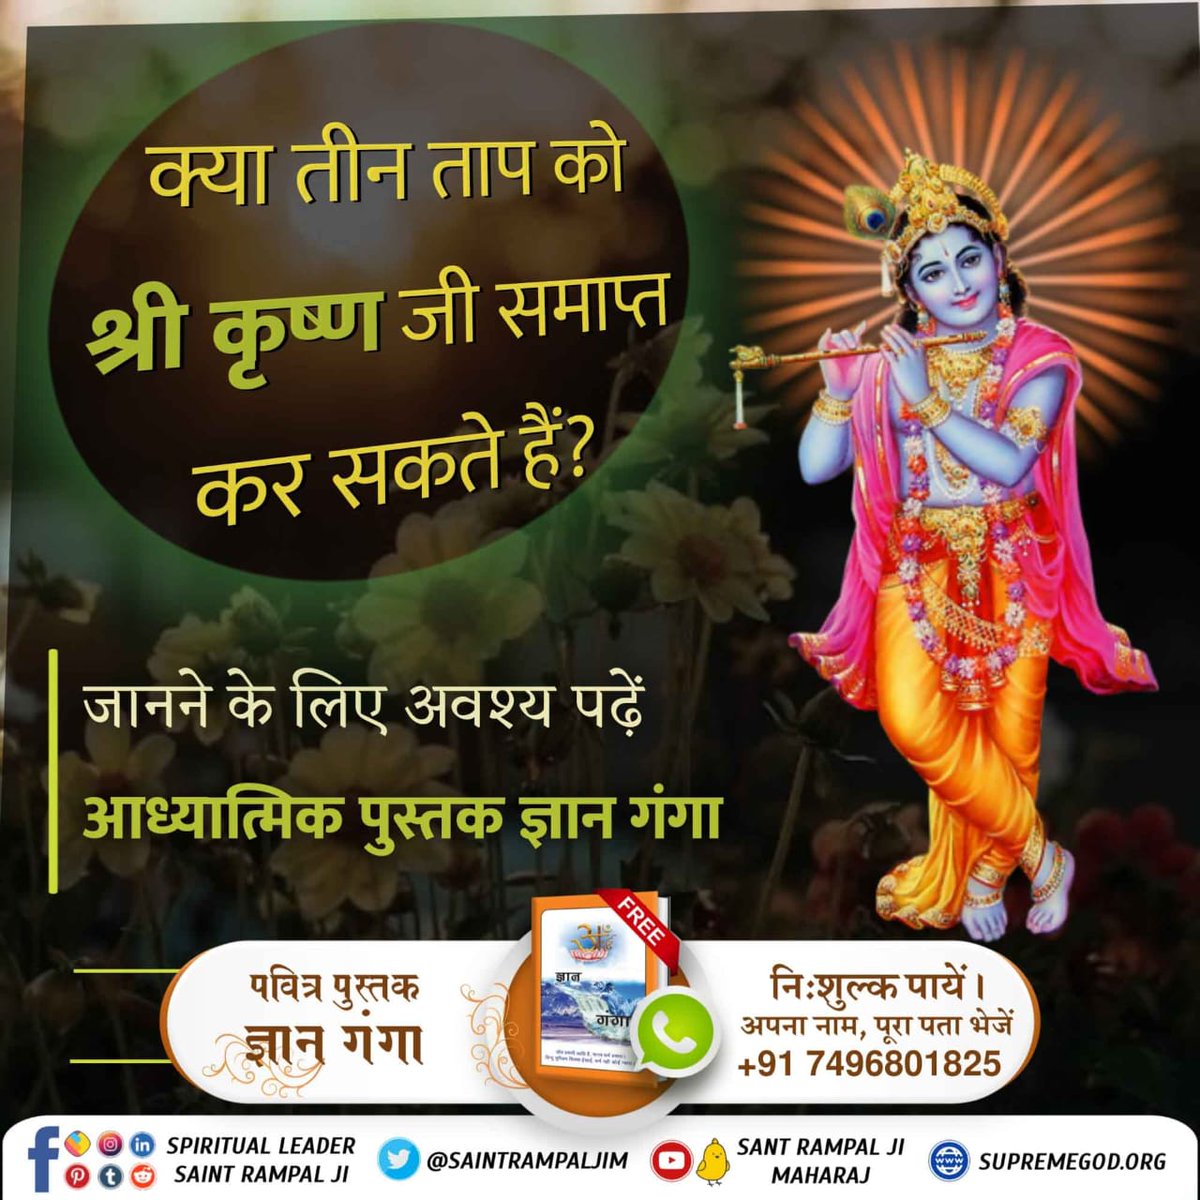 #SantRampalJiMaharaj #GodNightSunday क्या तीन ताप को श्री कृष्ण जी समाप्त कर सकते हैं❓️ अधिक जानकारी के लिए ⤵️⤵️ Sant Rampal Ji Maharaj Yotube Channel पर visit करें🖥